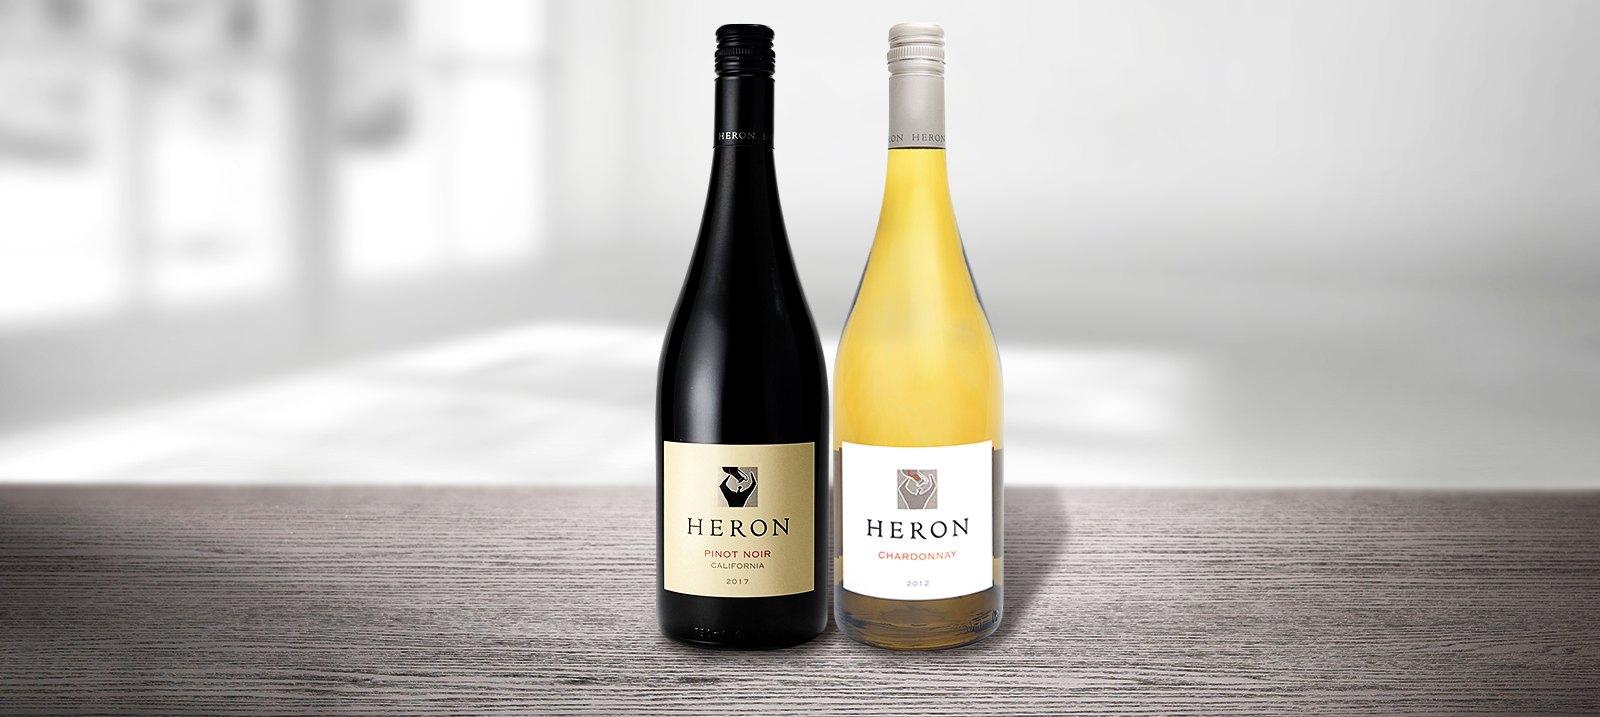 Heron Wines